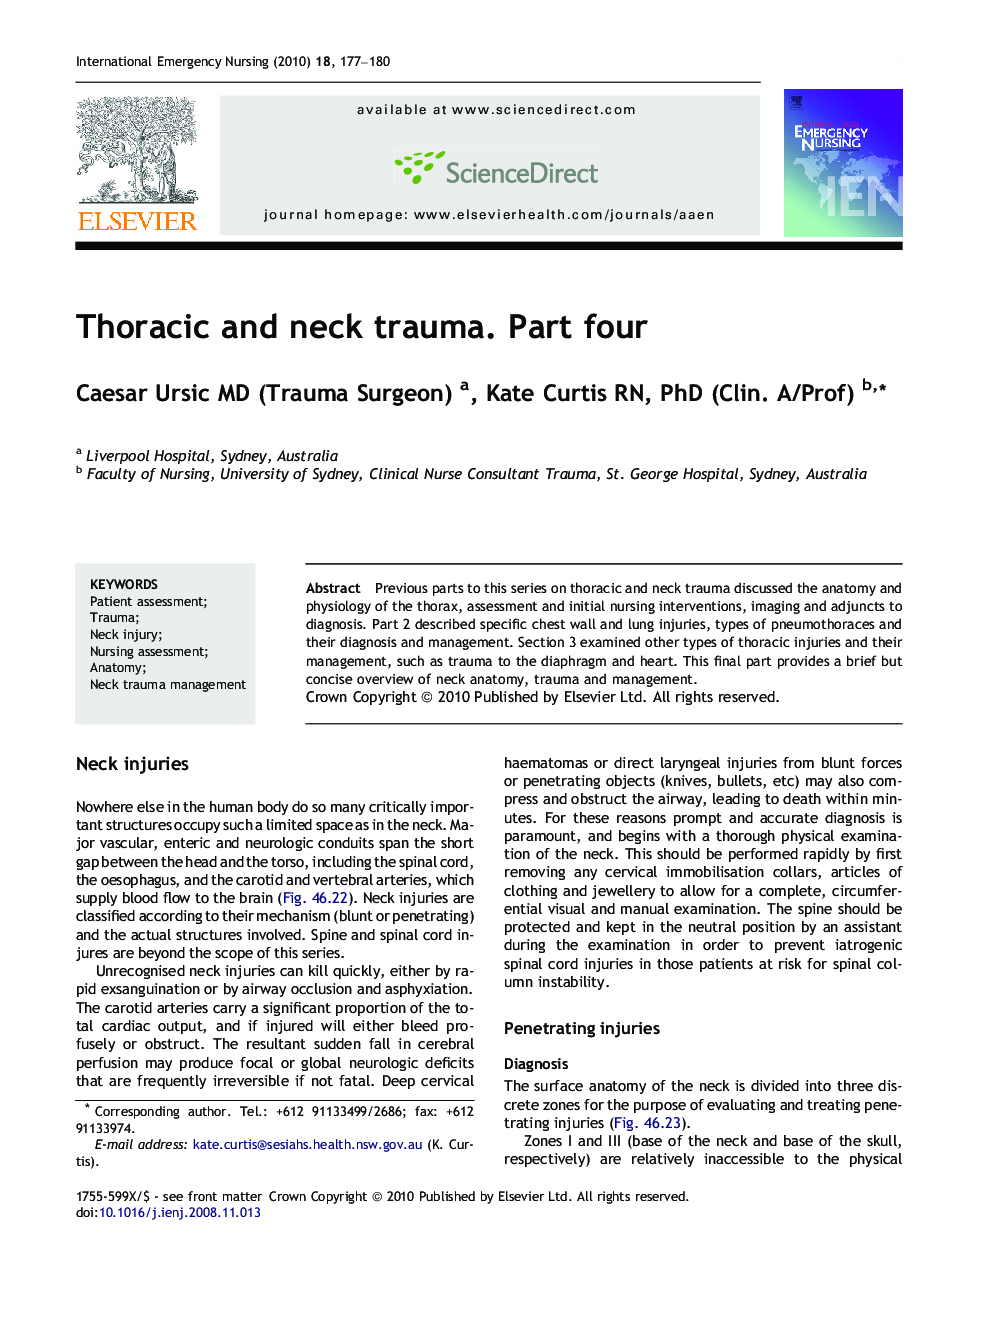 Thoracic and neck trauma. Part four